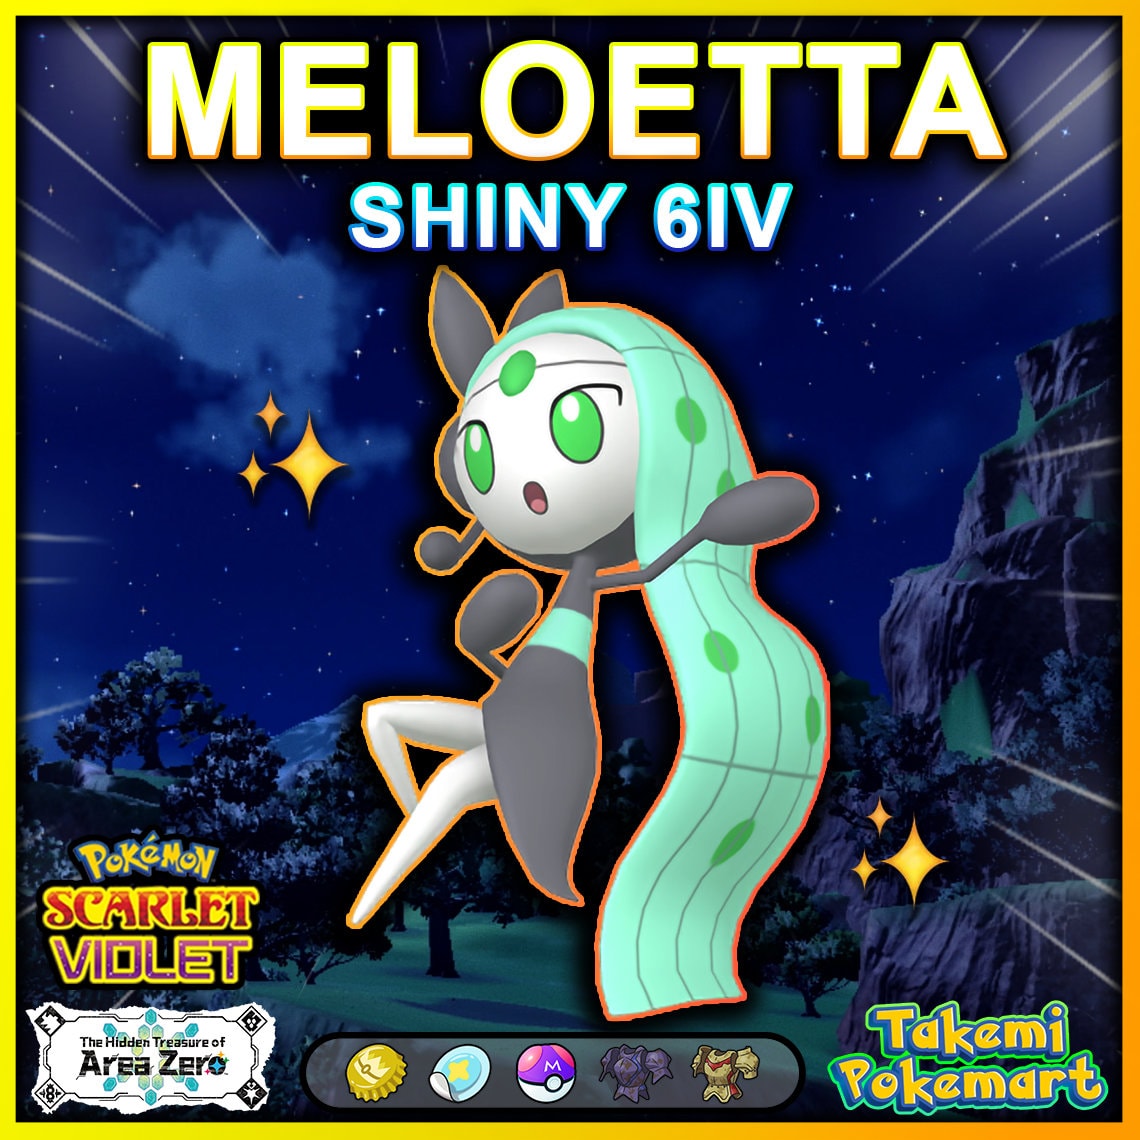 Shiny Meloetta 